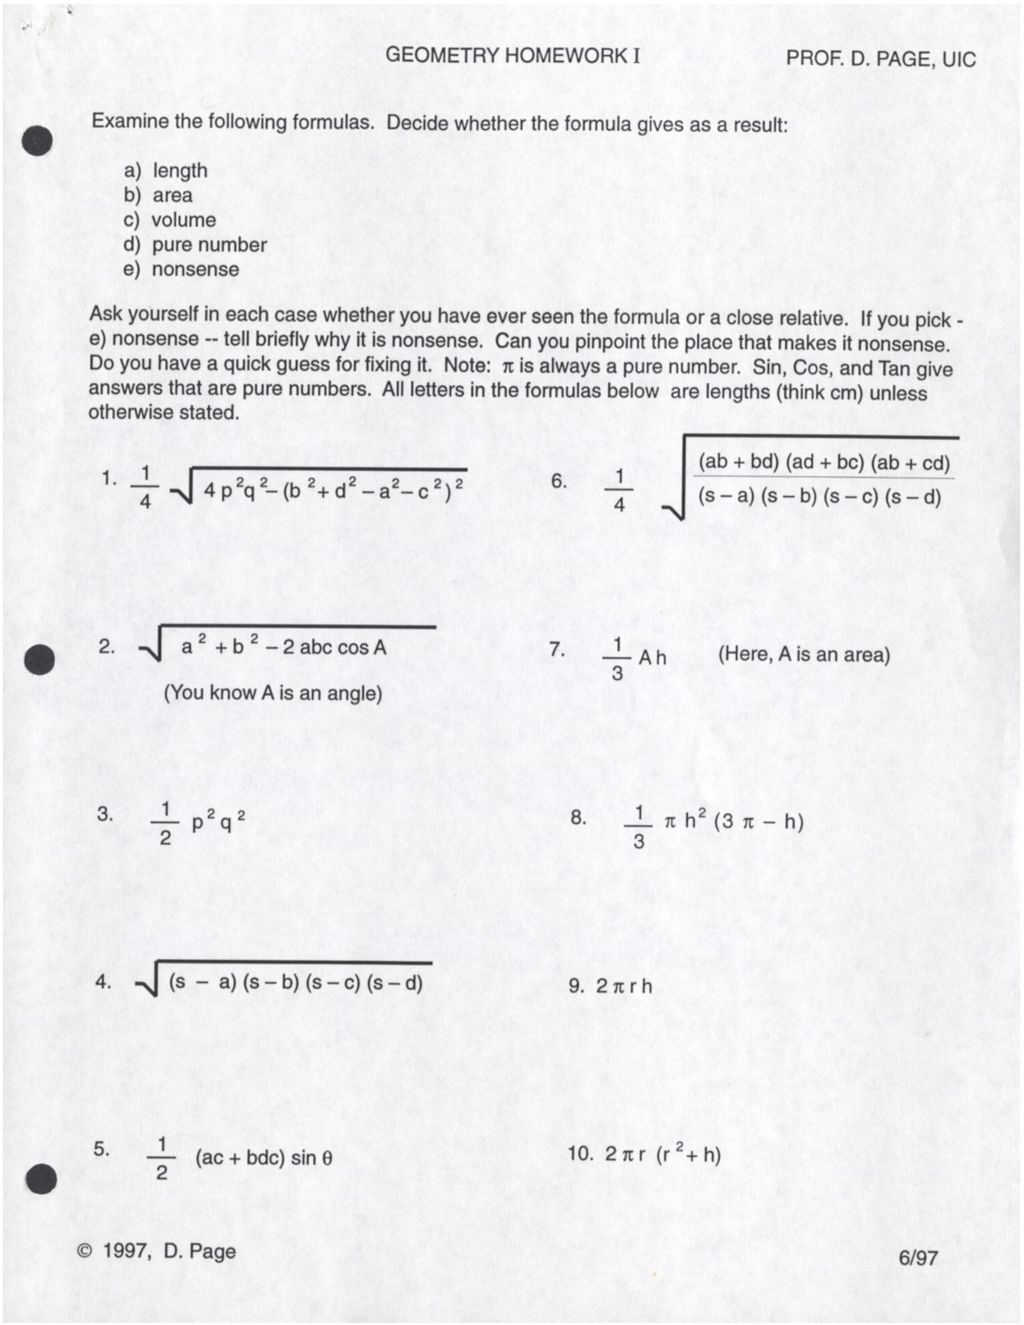 Geometry Homework I, 1997